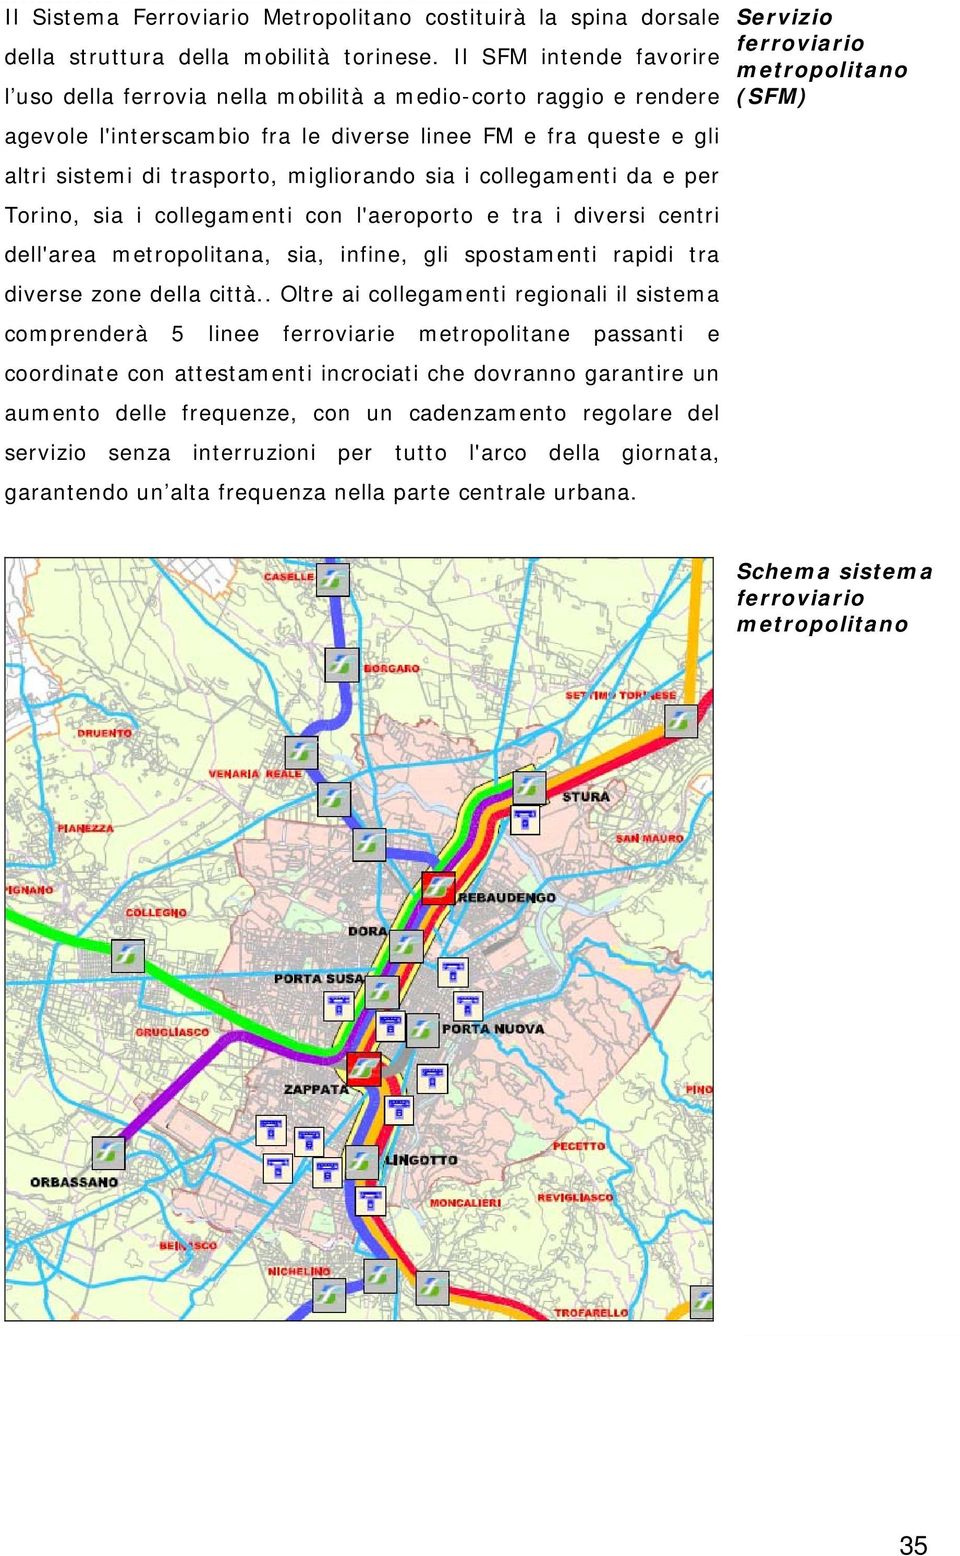 sia i collegamenti da e per Torino, sia i collegamenti con l'aeroporto e tra i diversi centri dell'area metropolitana, sia, infine, gli spostamenti rapidi tra diverse zone della città.